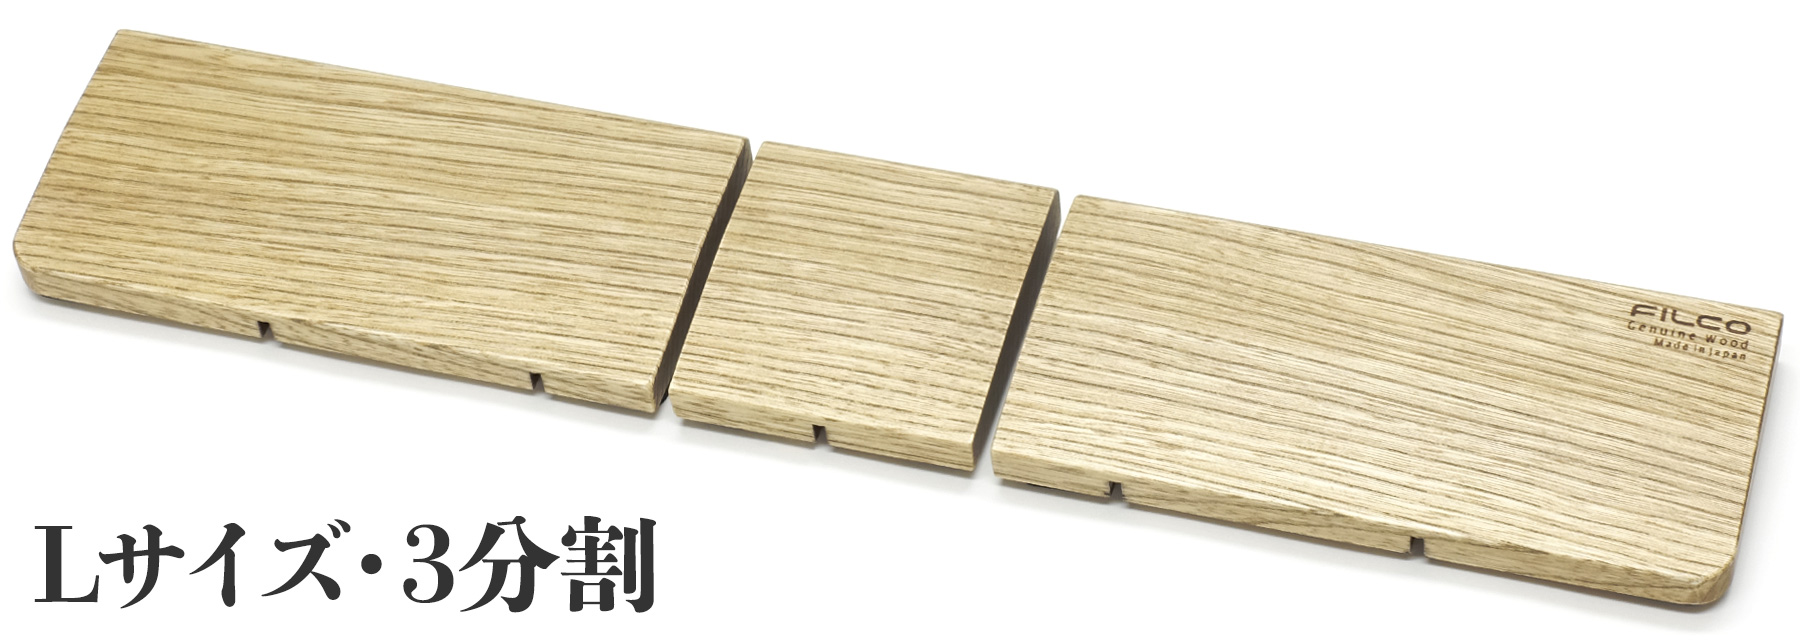 【通販限定】【北海道産天然木】FILCO Genuine Wood Wrist Rest L size 分離型(3分割)